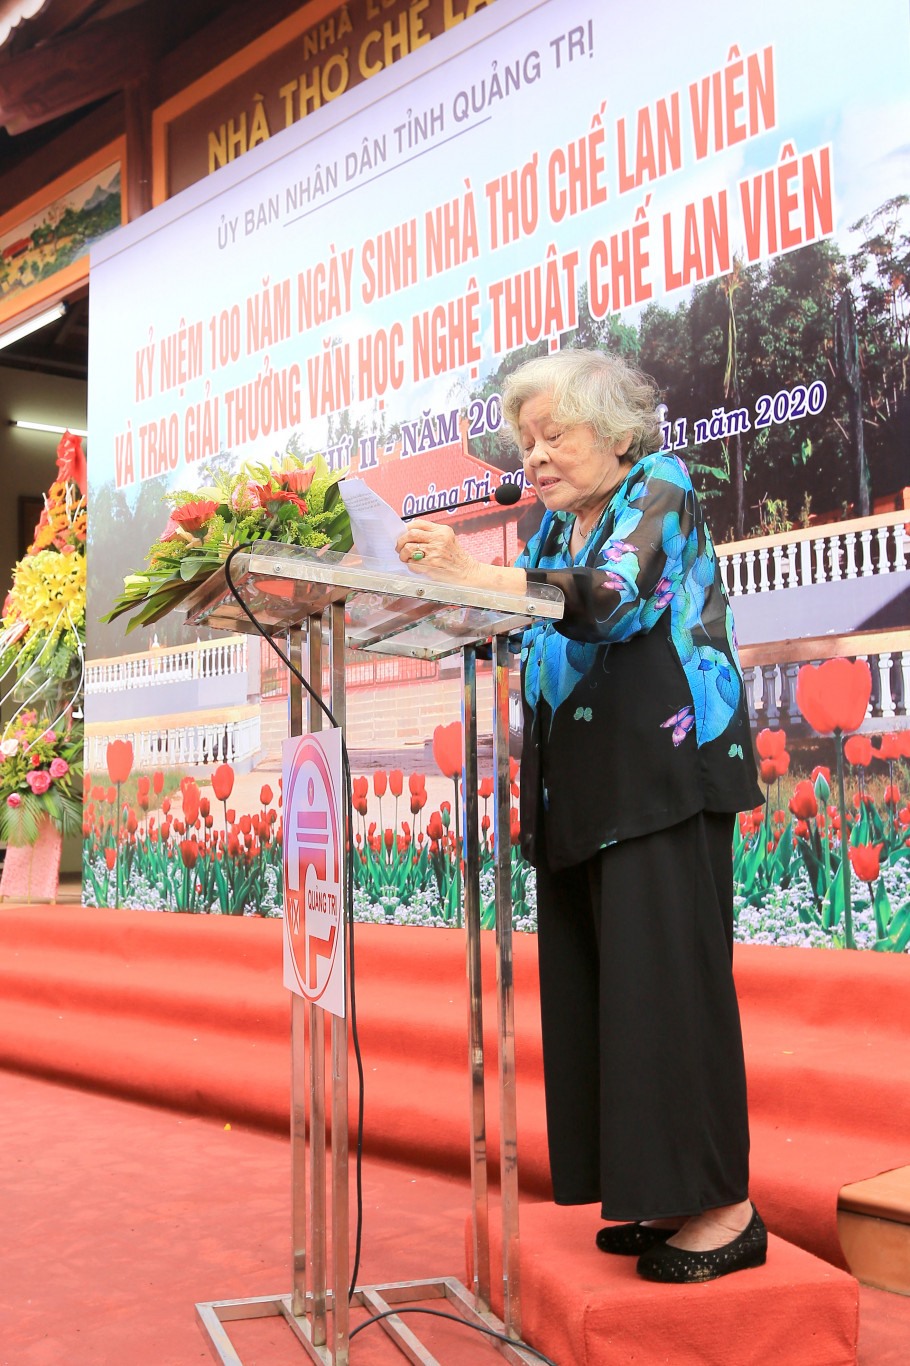 Nhà văn Vũ Thị Thường, đại diện gia đình nhà thơ Chế Lan Viên phát biểu trong buổi lễ khánh thành Nhà lưu niệm